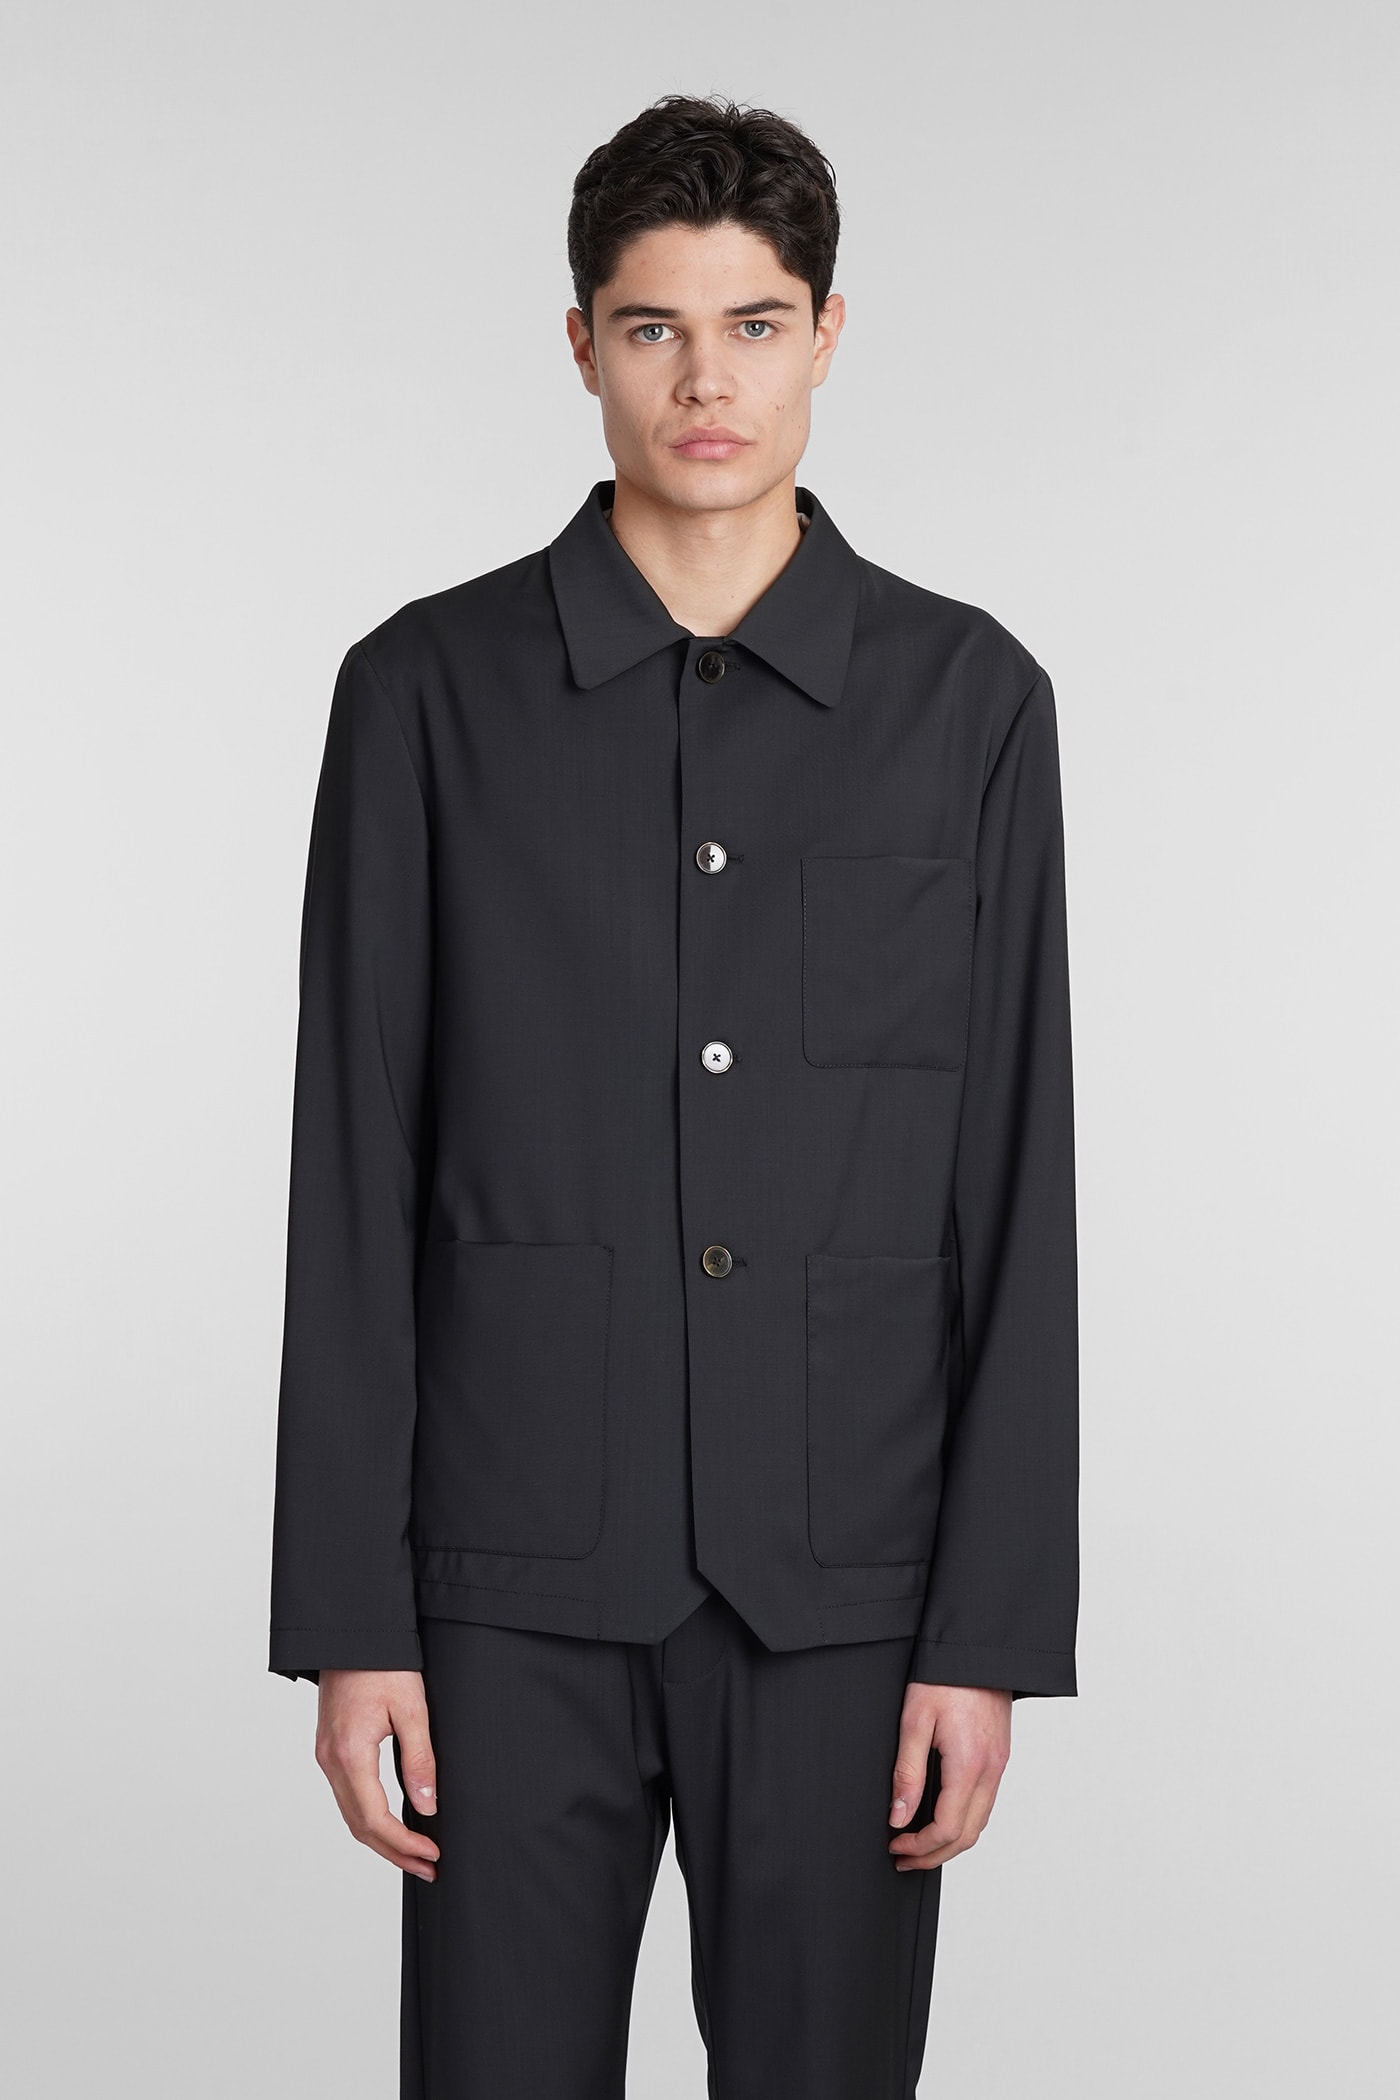 Visal Casual Jacket In Black Wool